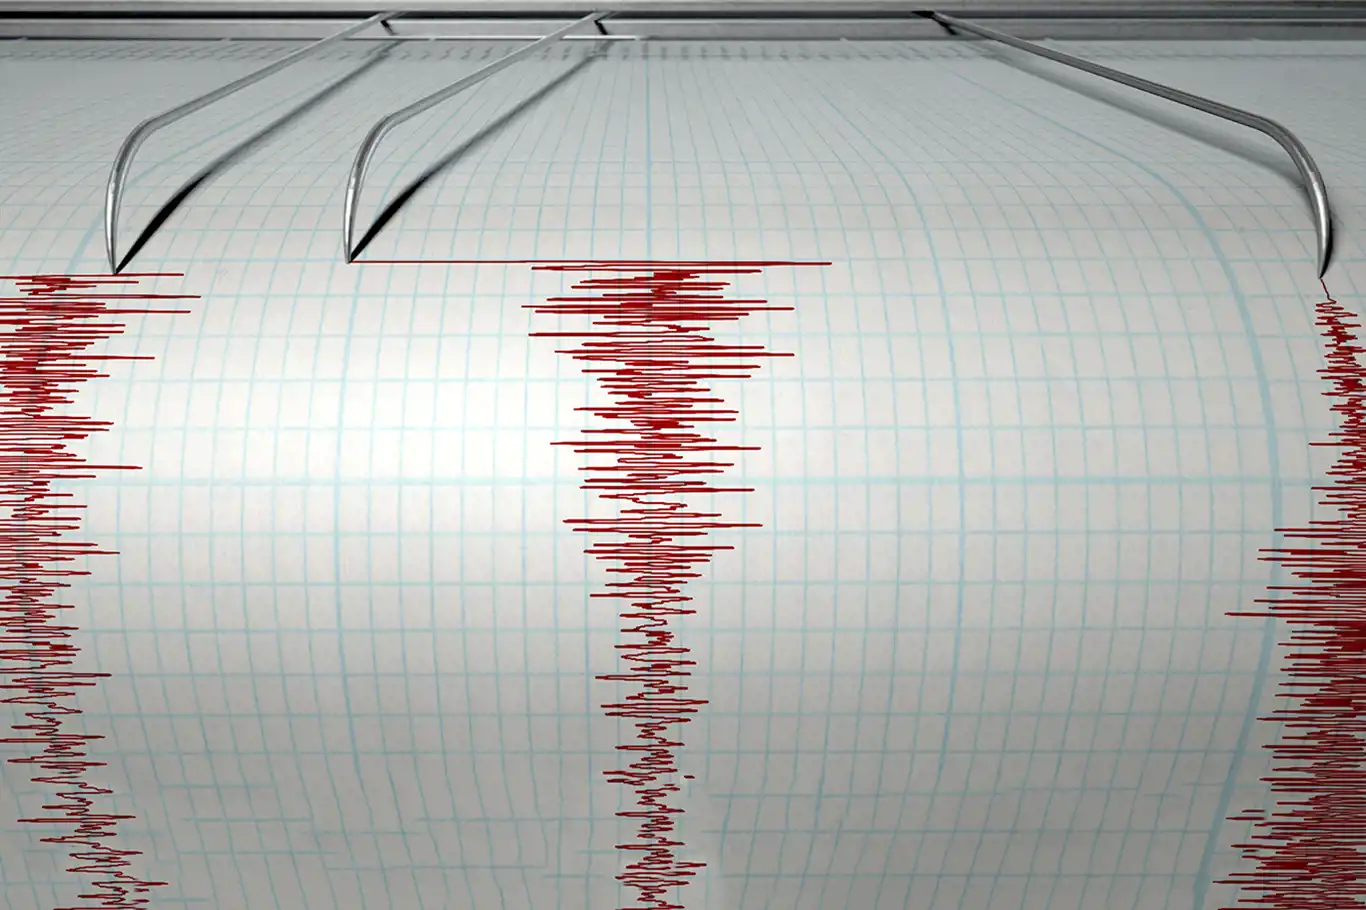 Hatay'da 3,8 büyüklüğünde deprem